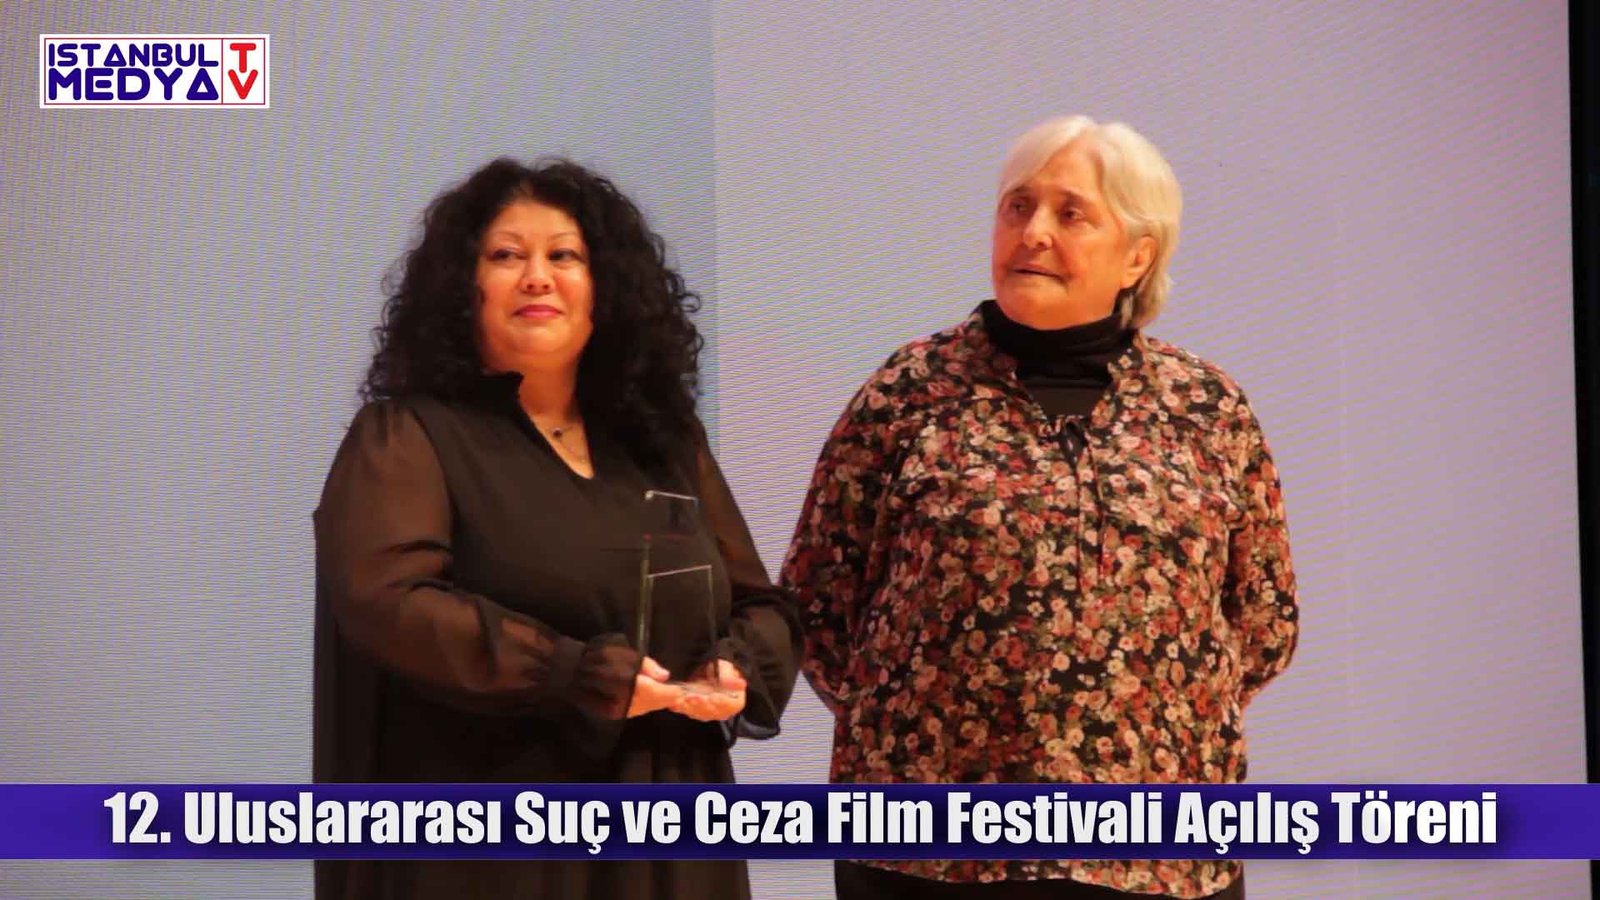 Sevin Okyay – 12. Uluslararası Suç ve Ceza Film Festivali Açılış Töreni